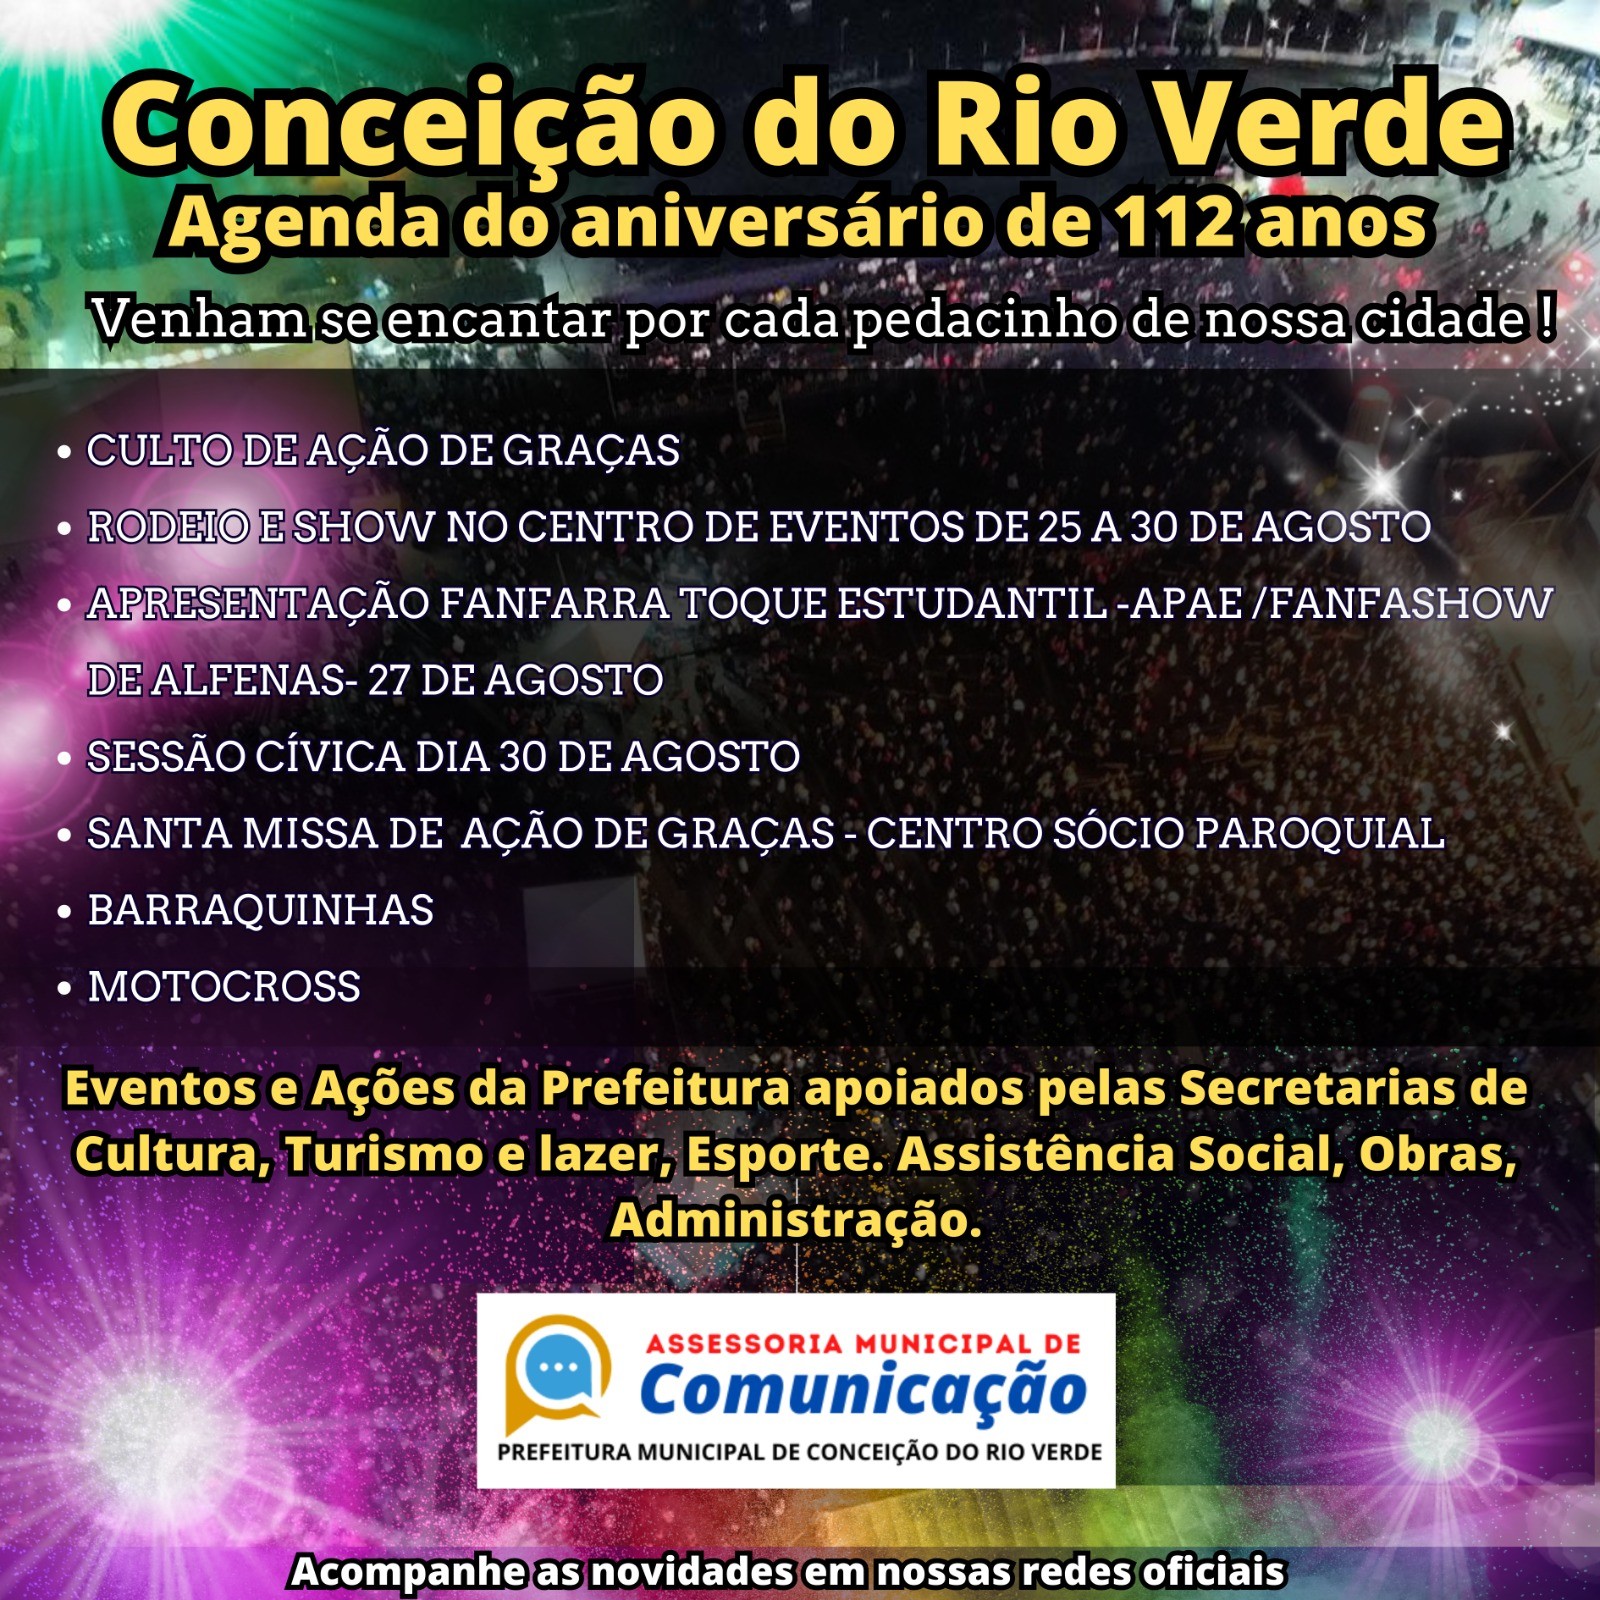 Prefeitura Municipal de Conceição do Rio Verde